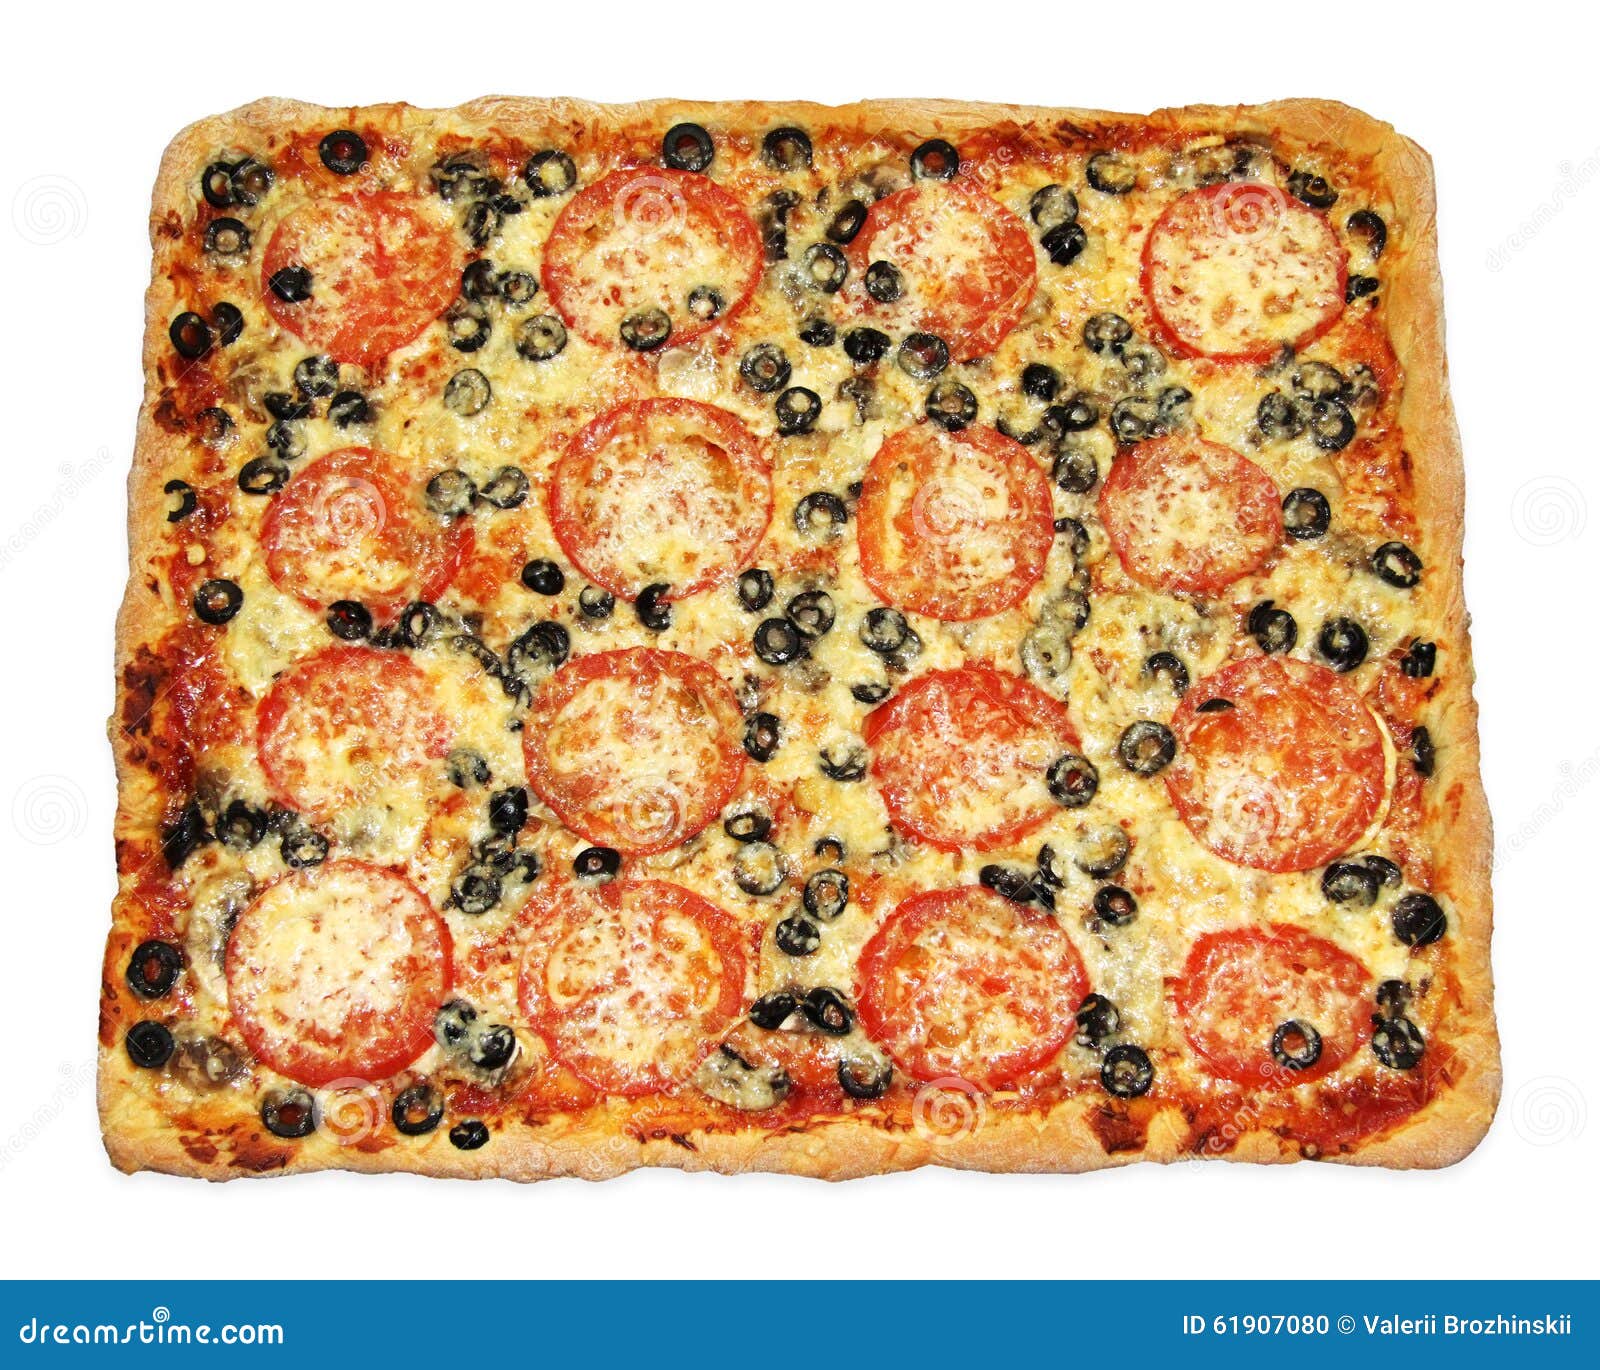 407 Pizza Cuadrada Fotos de stock - Fotos libres de regalías de Dreamstime